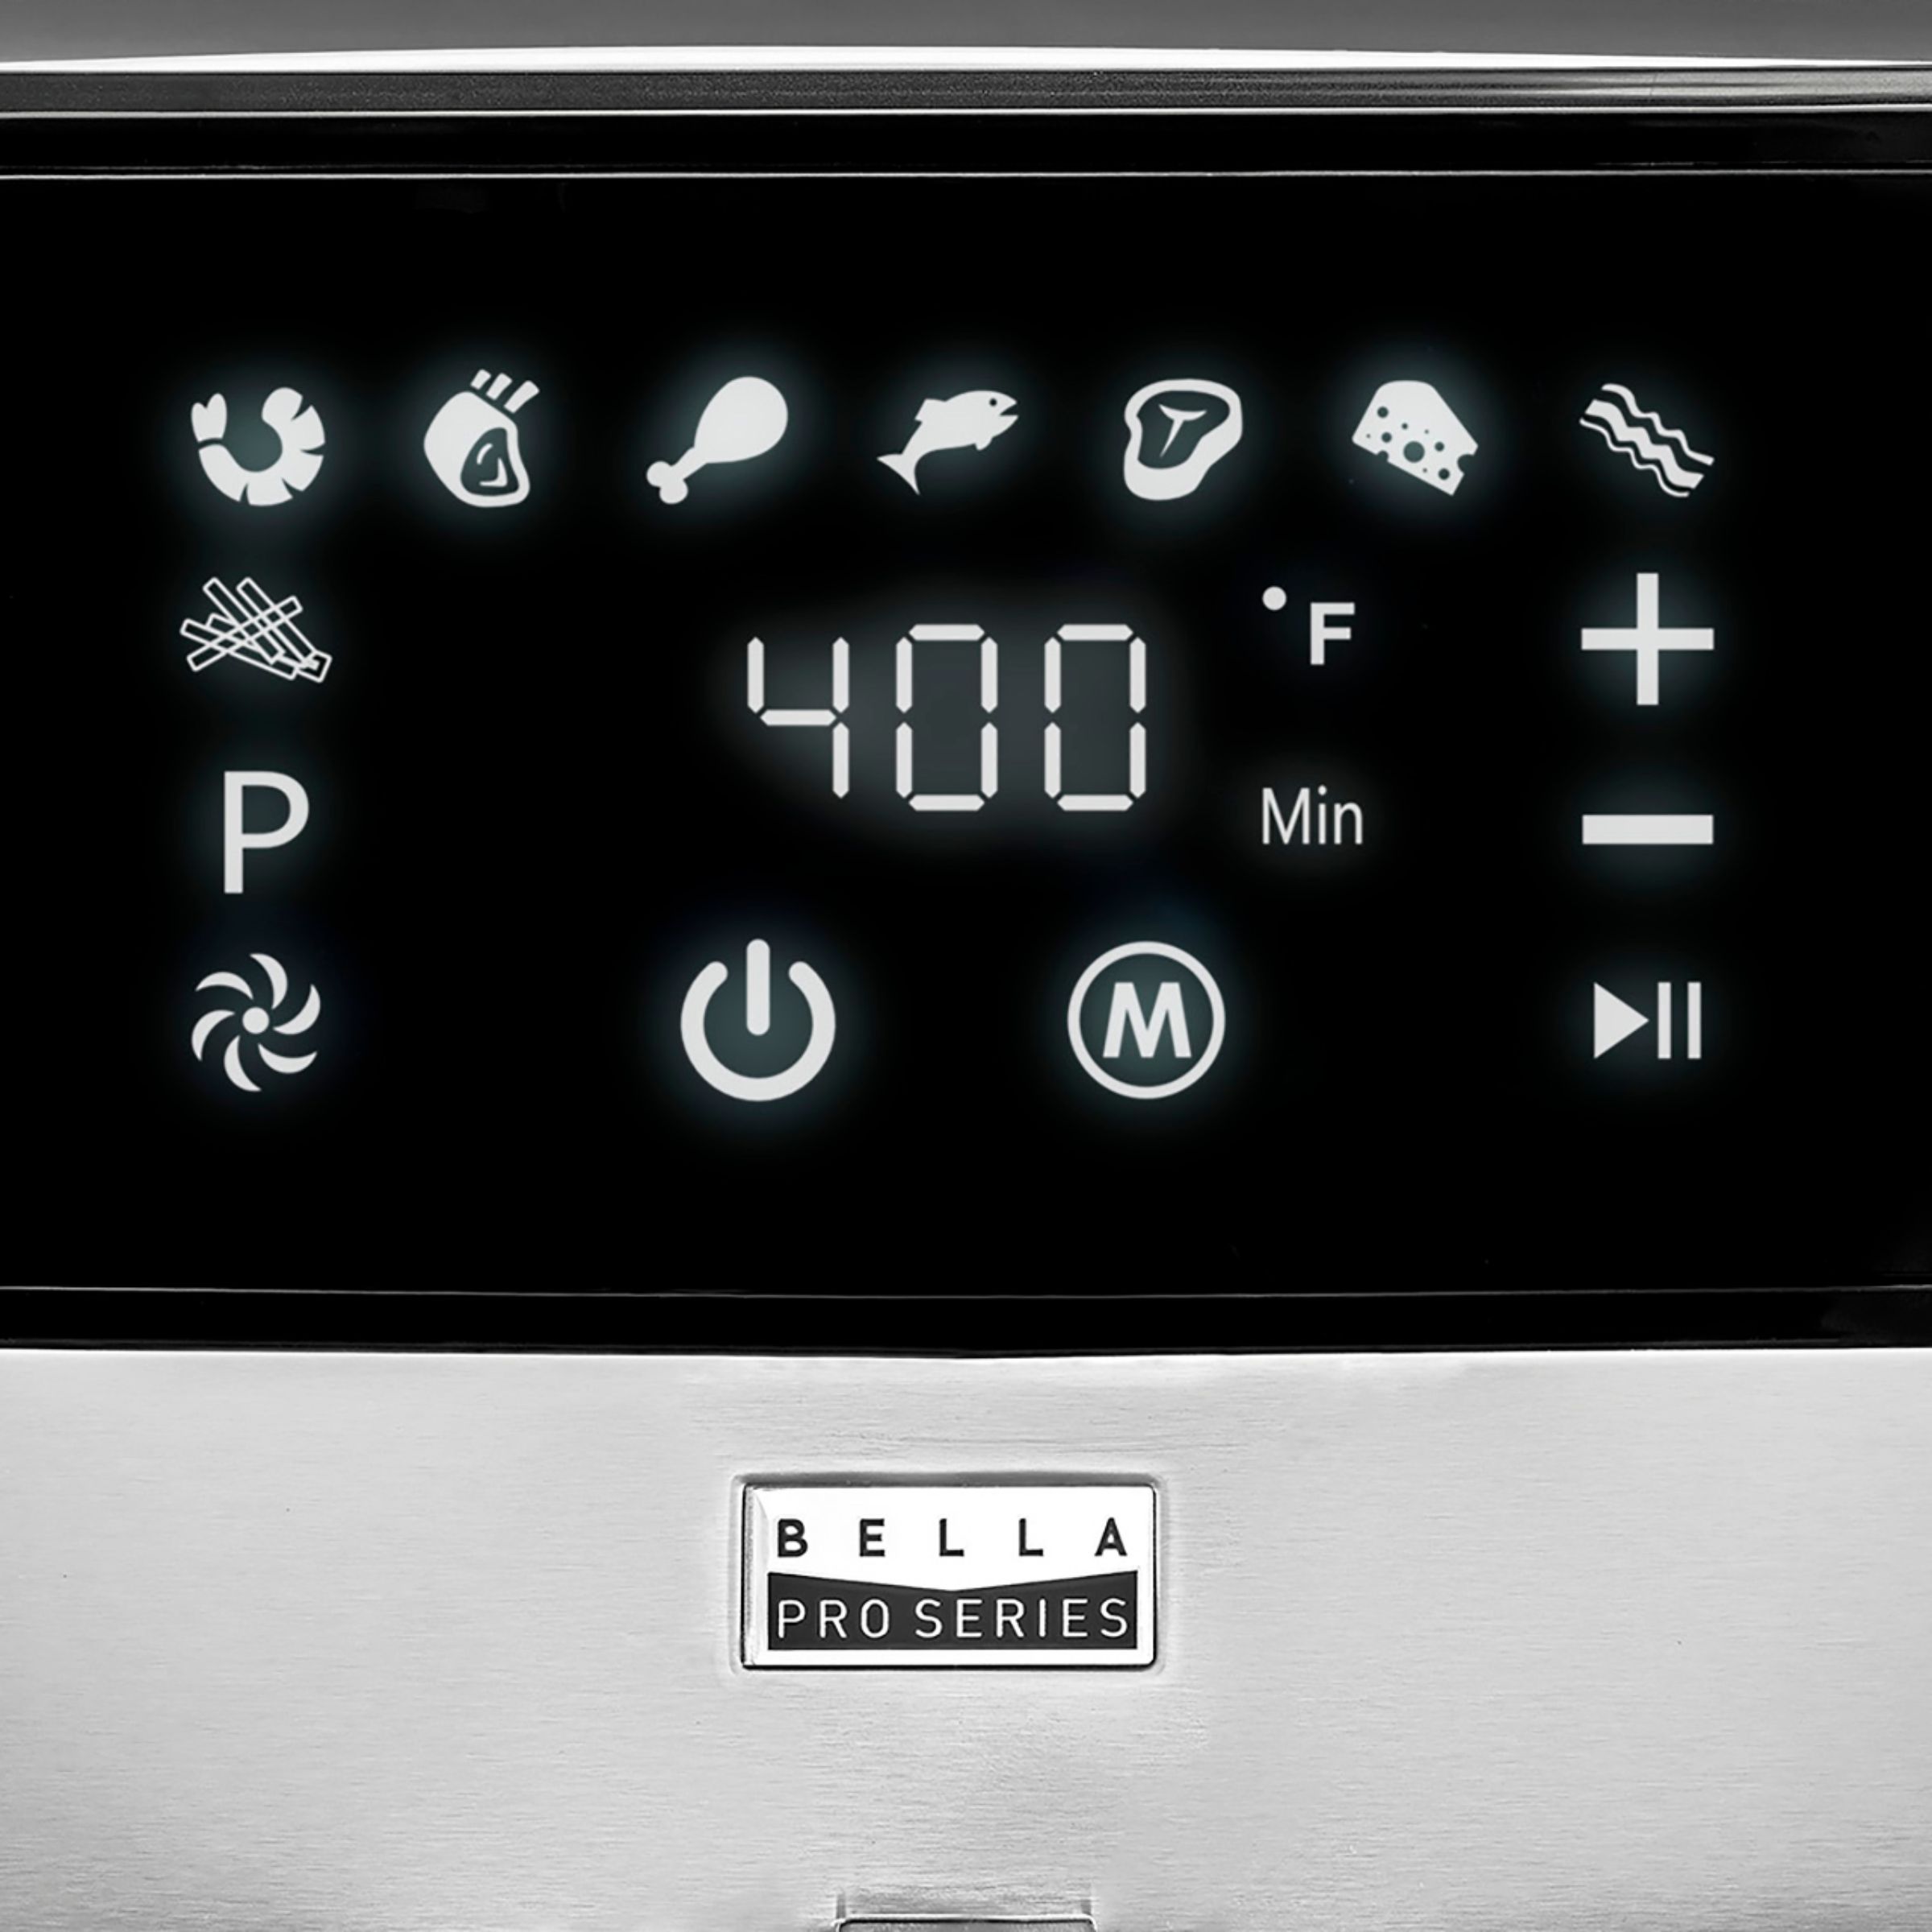 Best Buy: Bella Pro Series 5.3 qt. Digital Air Fryer Stainless Steel 90065